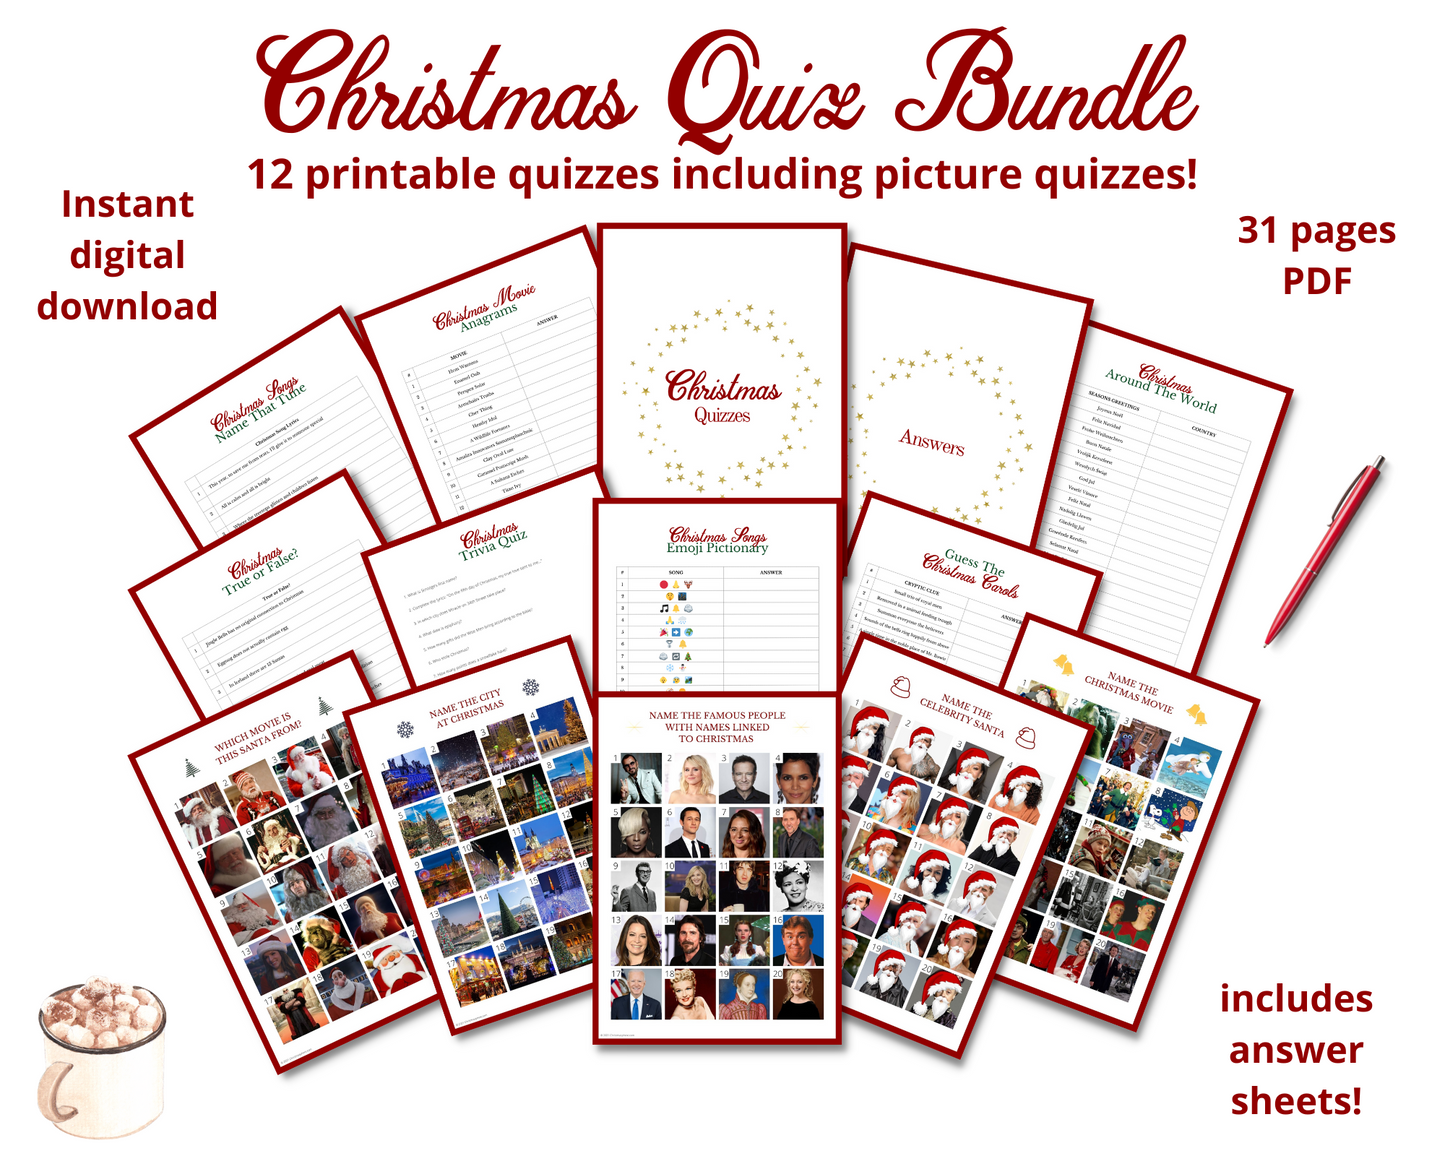 Christmas Quizzes Bundle | 31 pages | including 5 Christmas picture quizzes